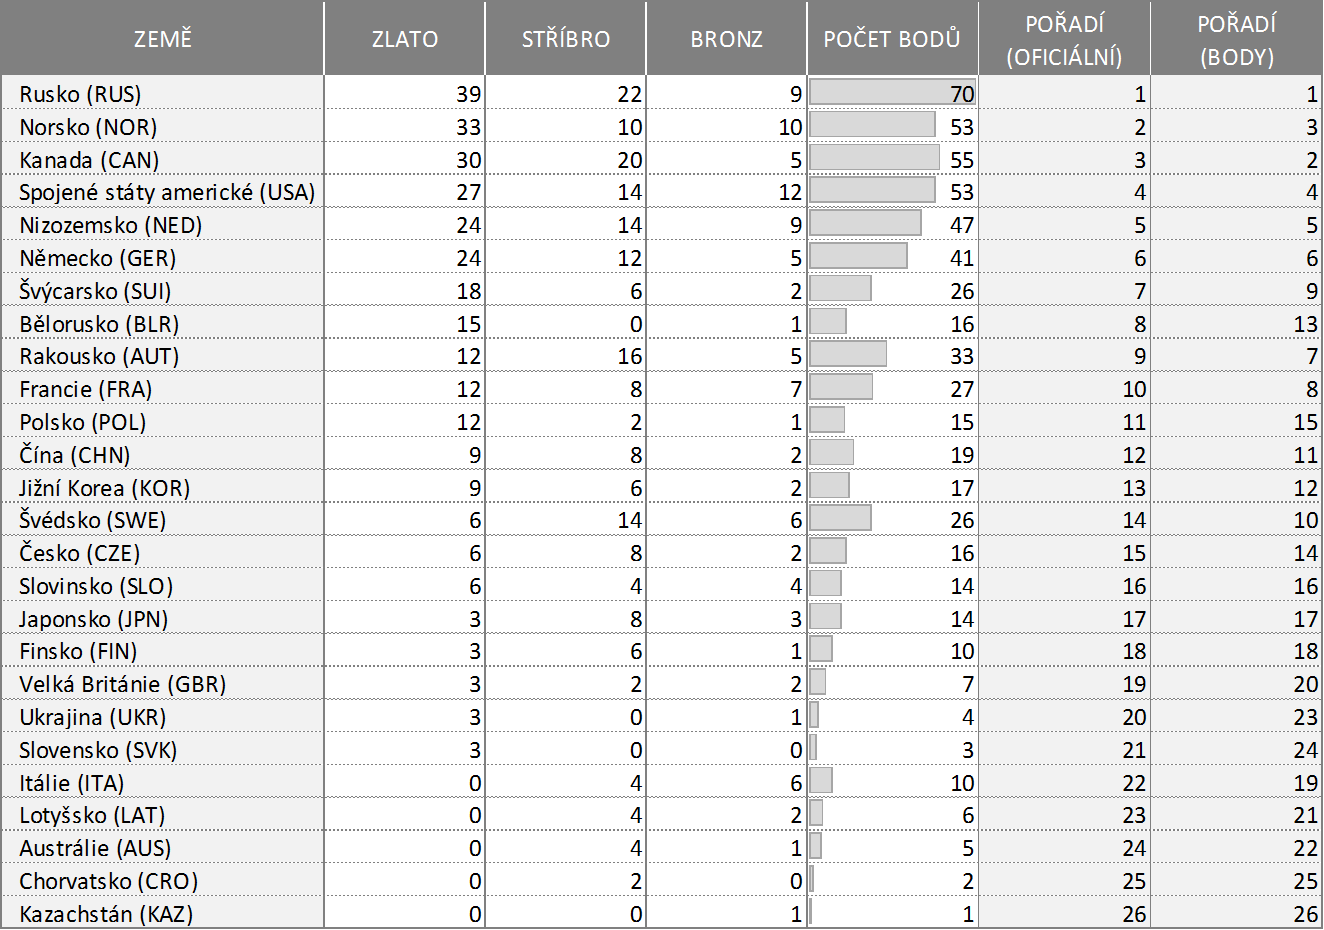 Medailové pořadí zemí na ZOH 2014 - oficiální a podle váženého přepočtu na "body".